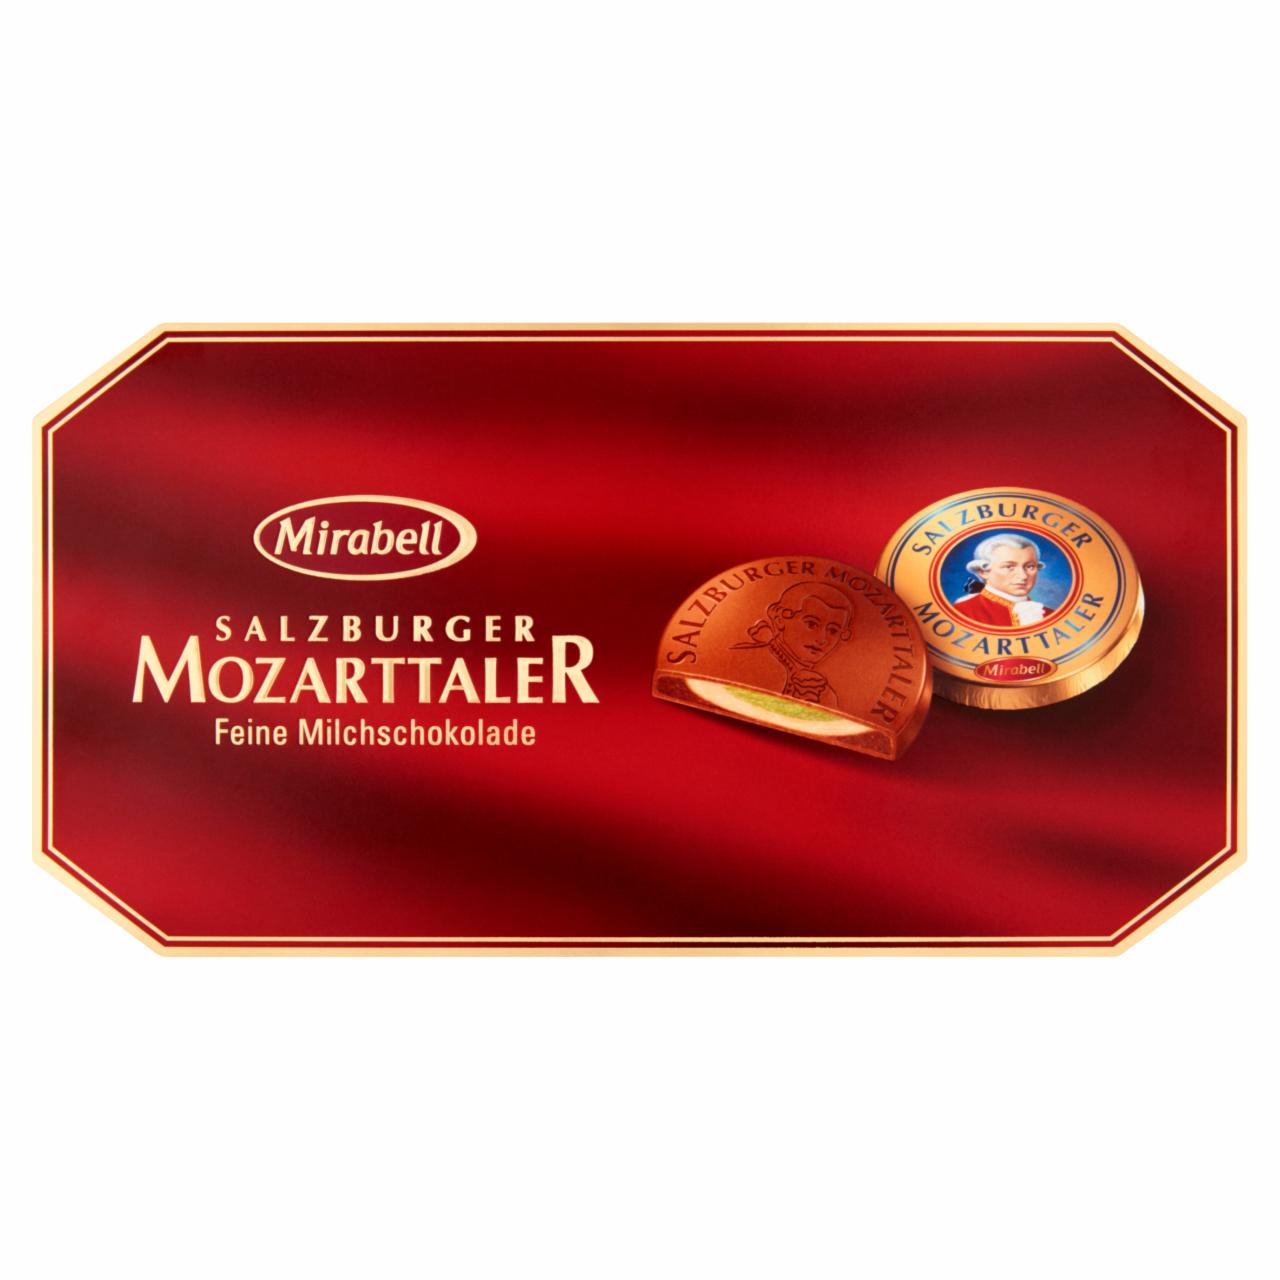 Képek - Mirabell Salzburger Mozarttaler tejcsokoládé mogyoróskrém és marcipános töltelékkel 10 db 200 g